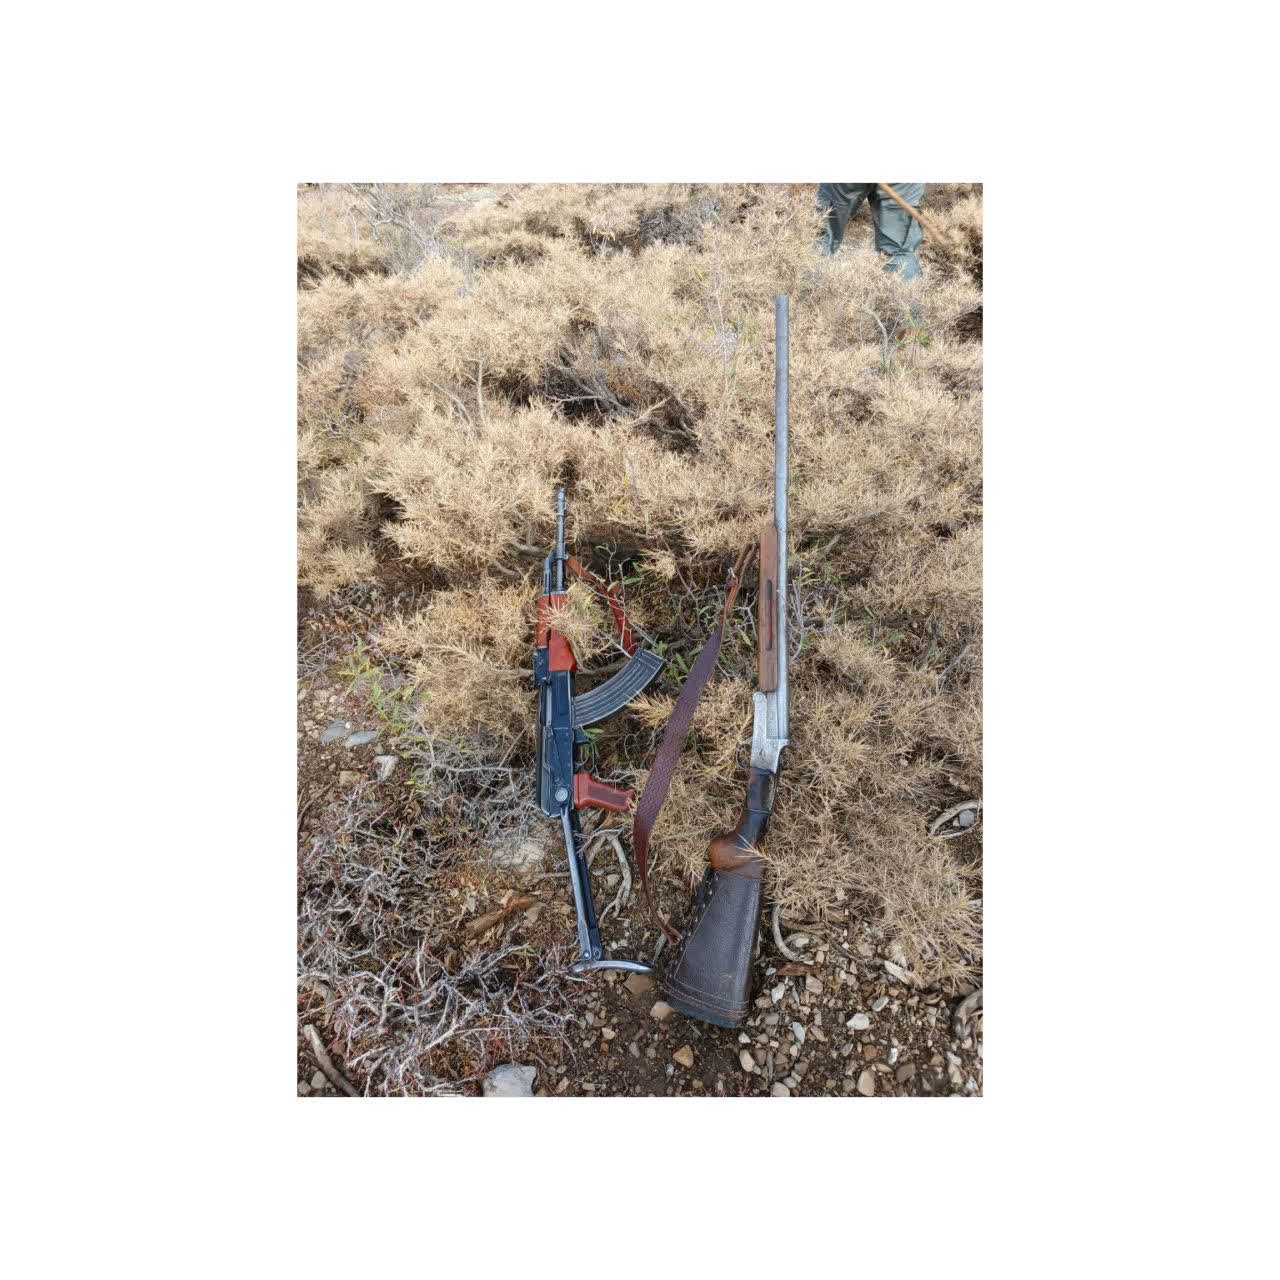 کشف و ضبط دو قبضه اسلحه در گشت و کنترل و سرشماری حیات وحش در ارتفاعات منطقه حفاظت شده قالیکوه شهرستان الیگودرز